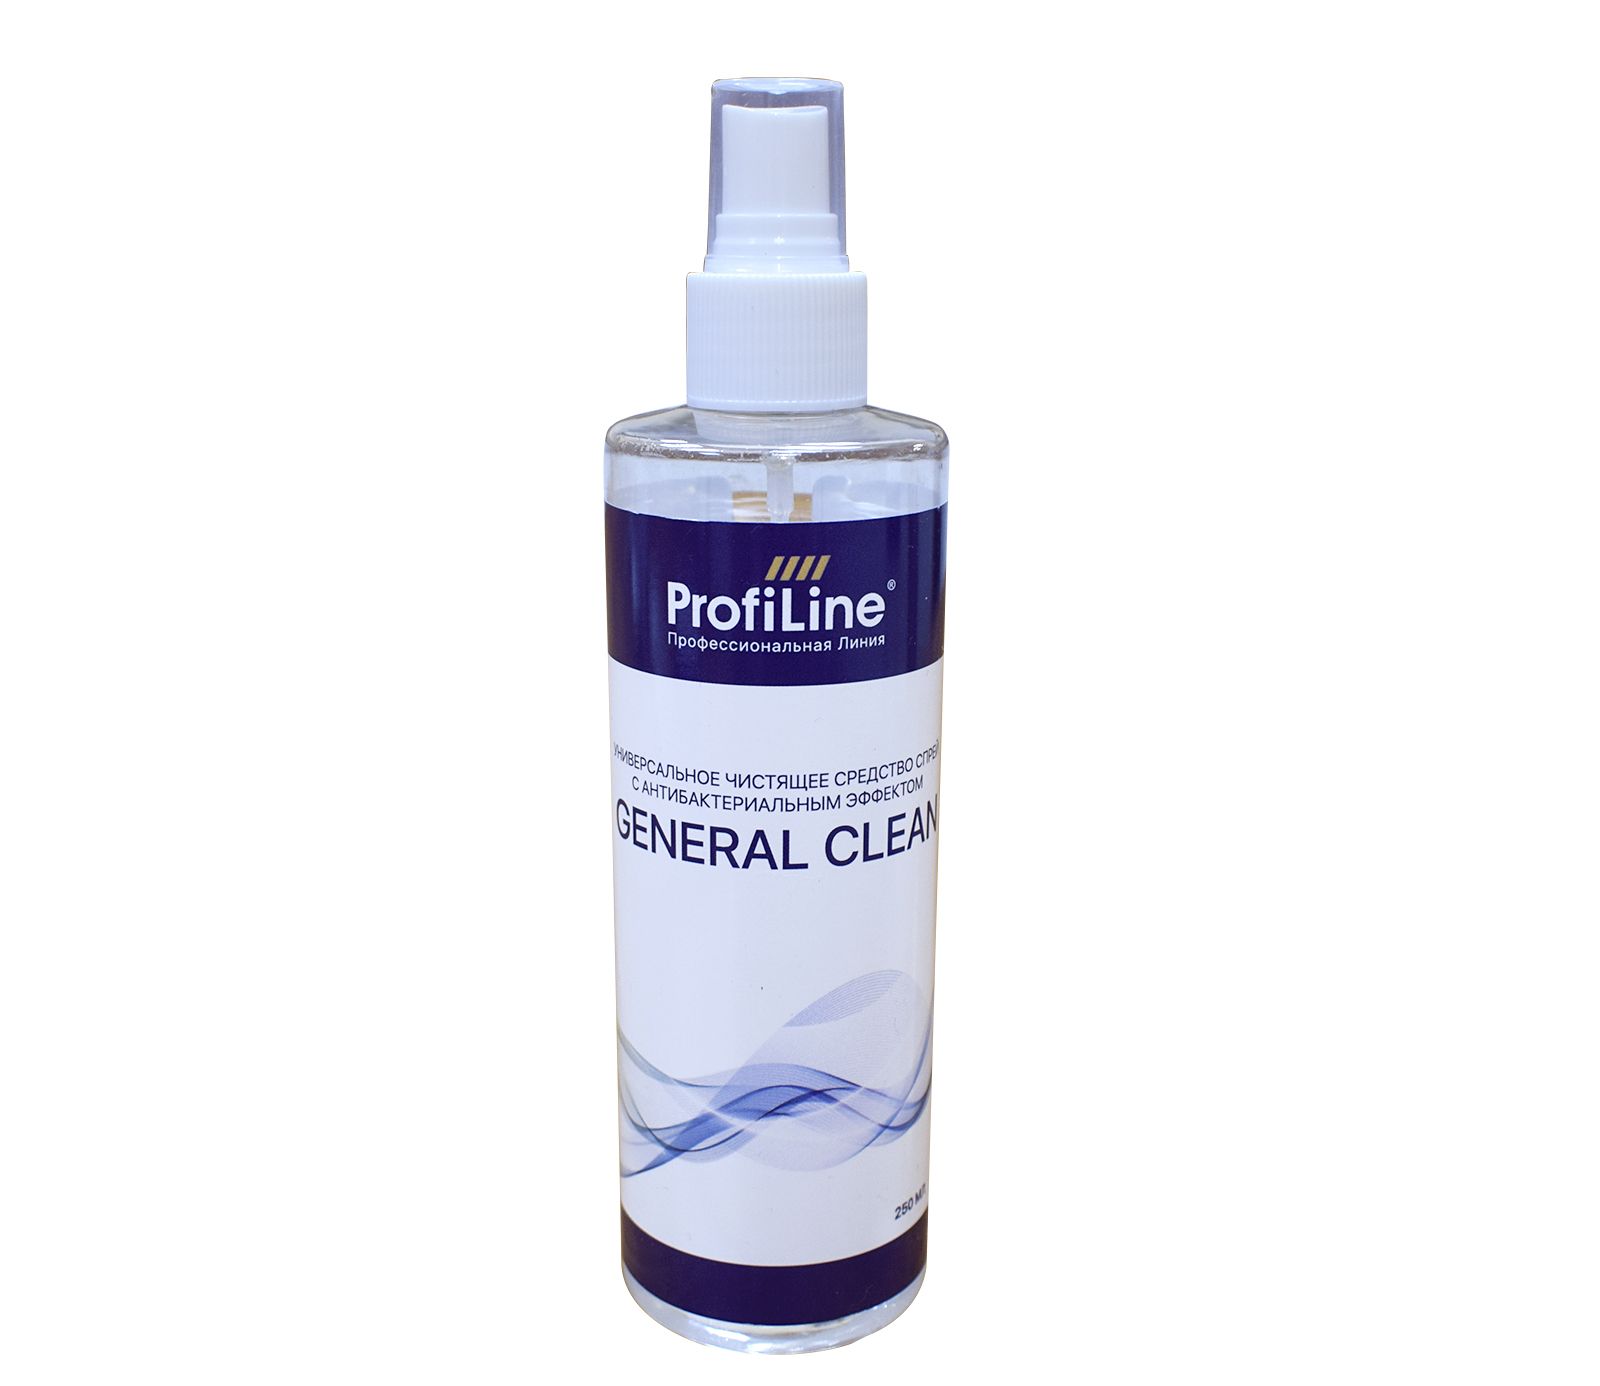 Чистящее средство спрей ProfiLine "General Clean" PLGC, универсальное, антибактериальное